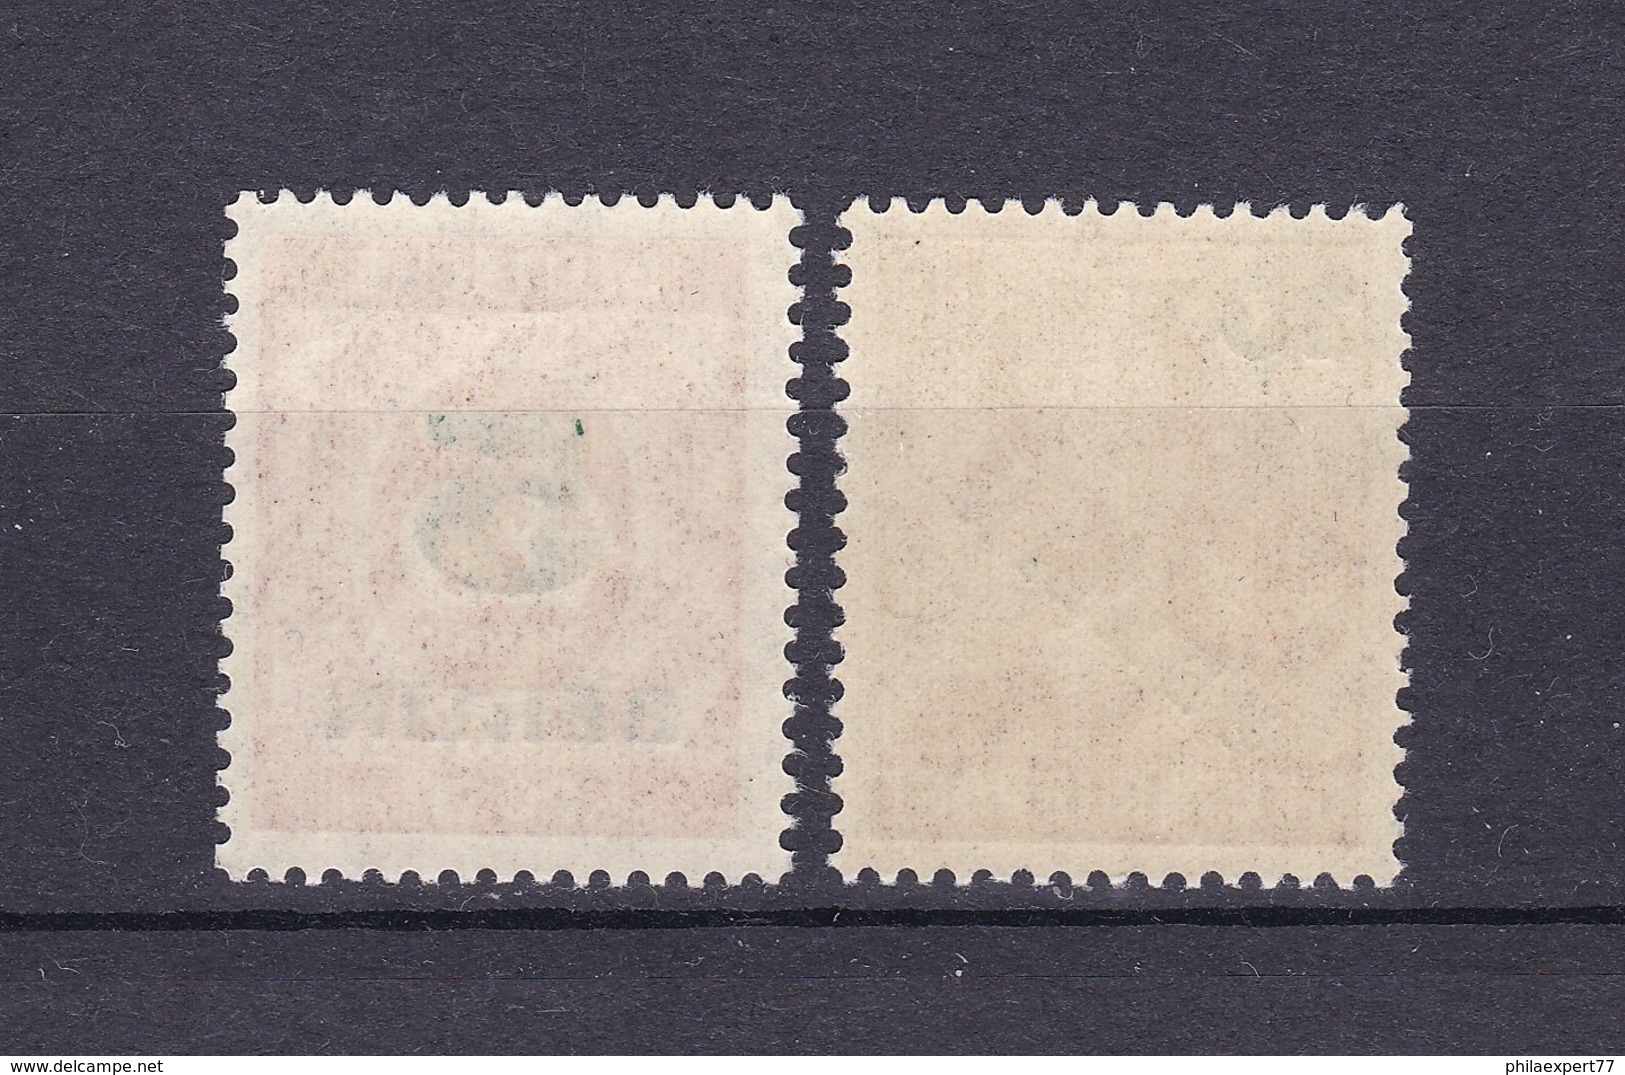 Berlin - 1949 - Michel Nr. 64/65 - Postfrisch - 25 Euro - Nuevos